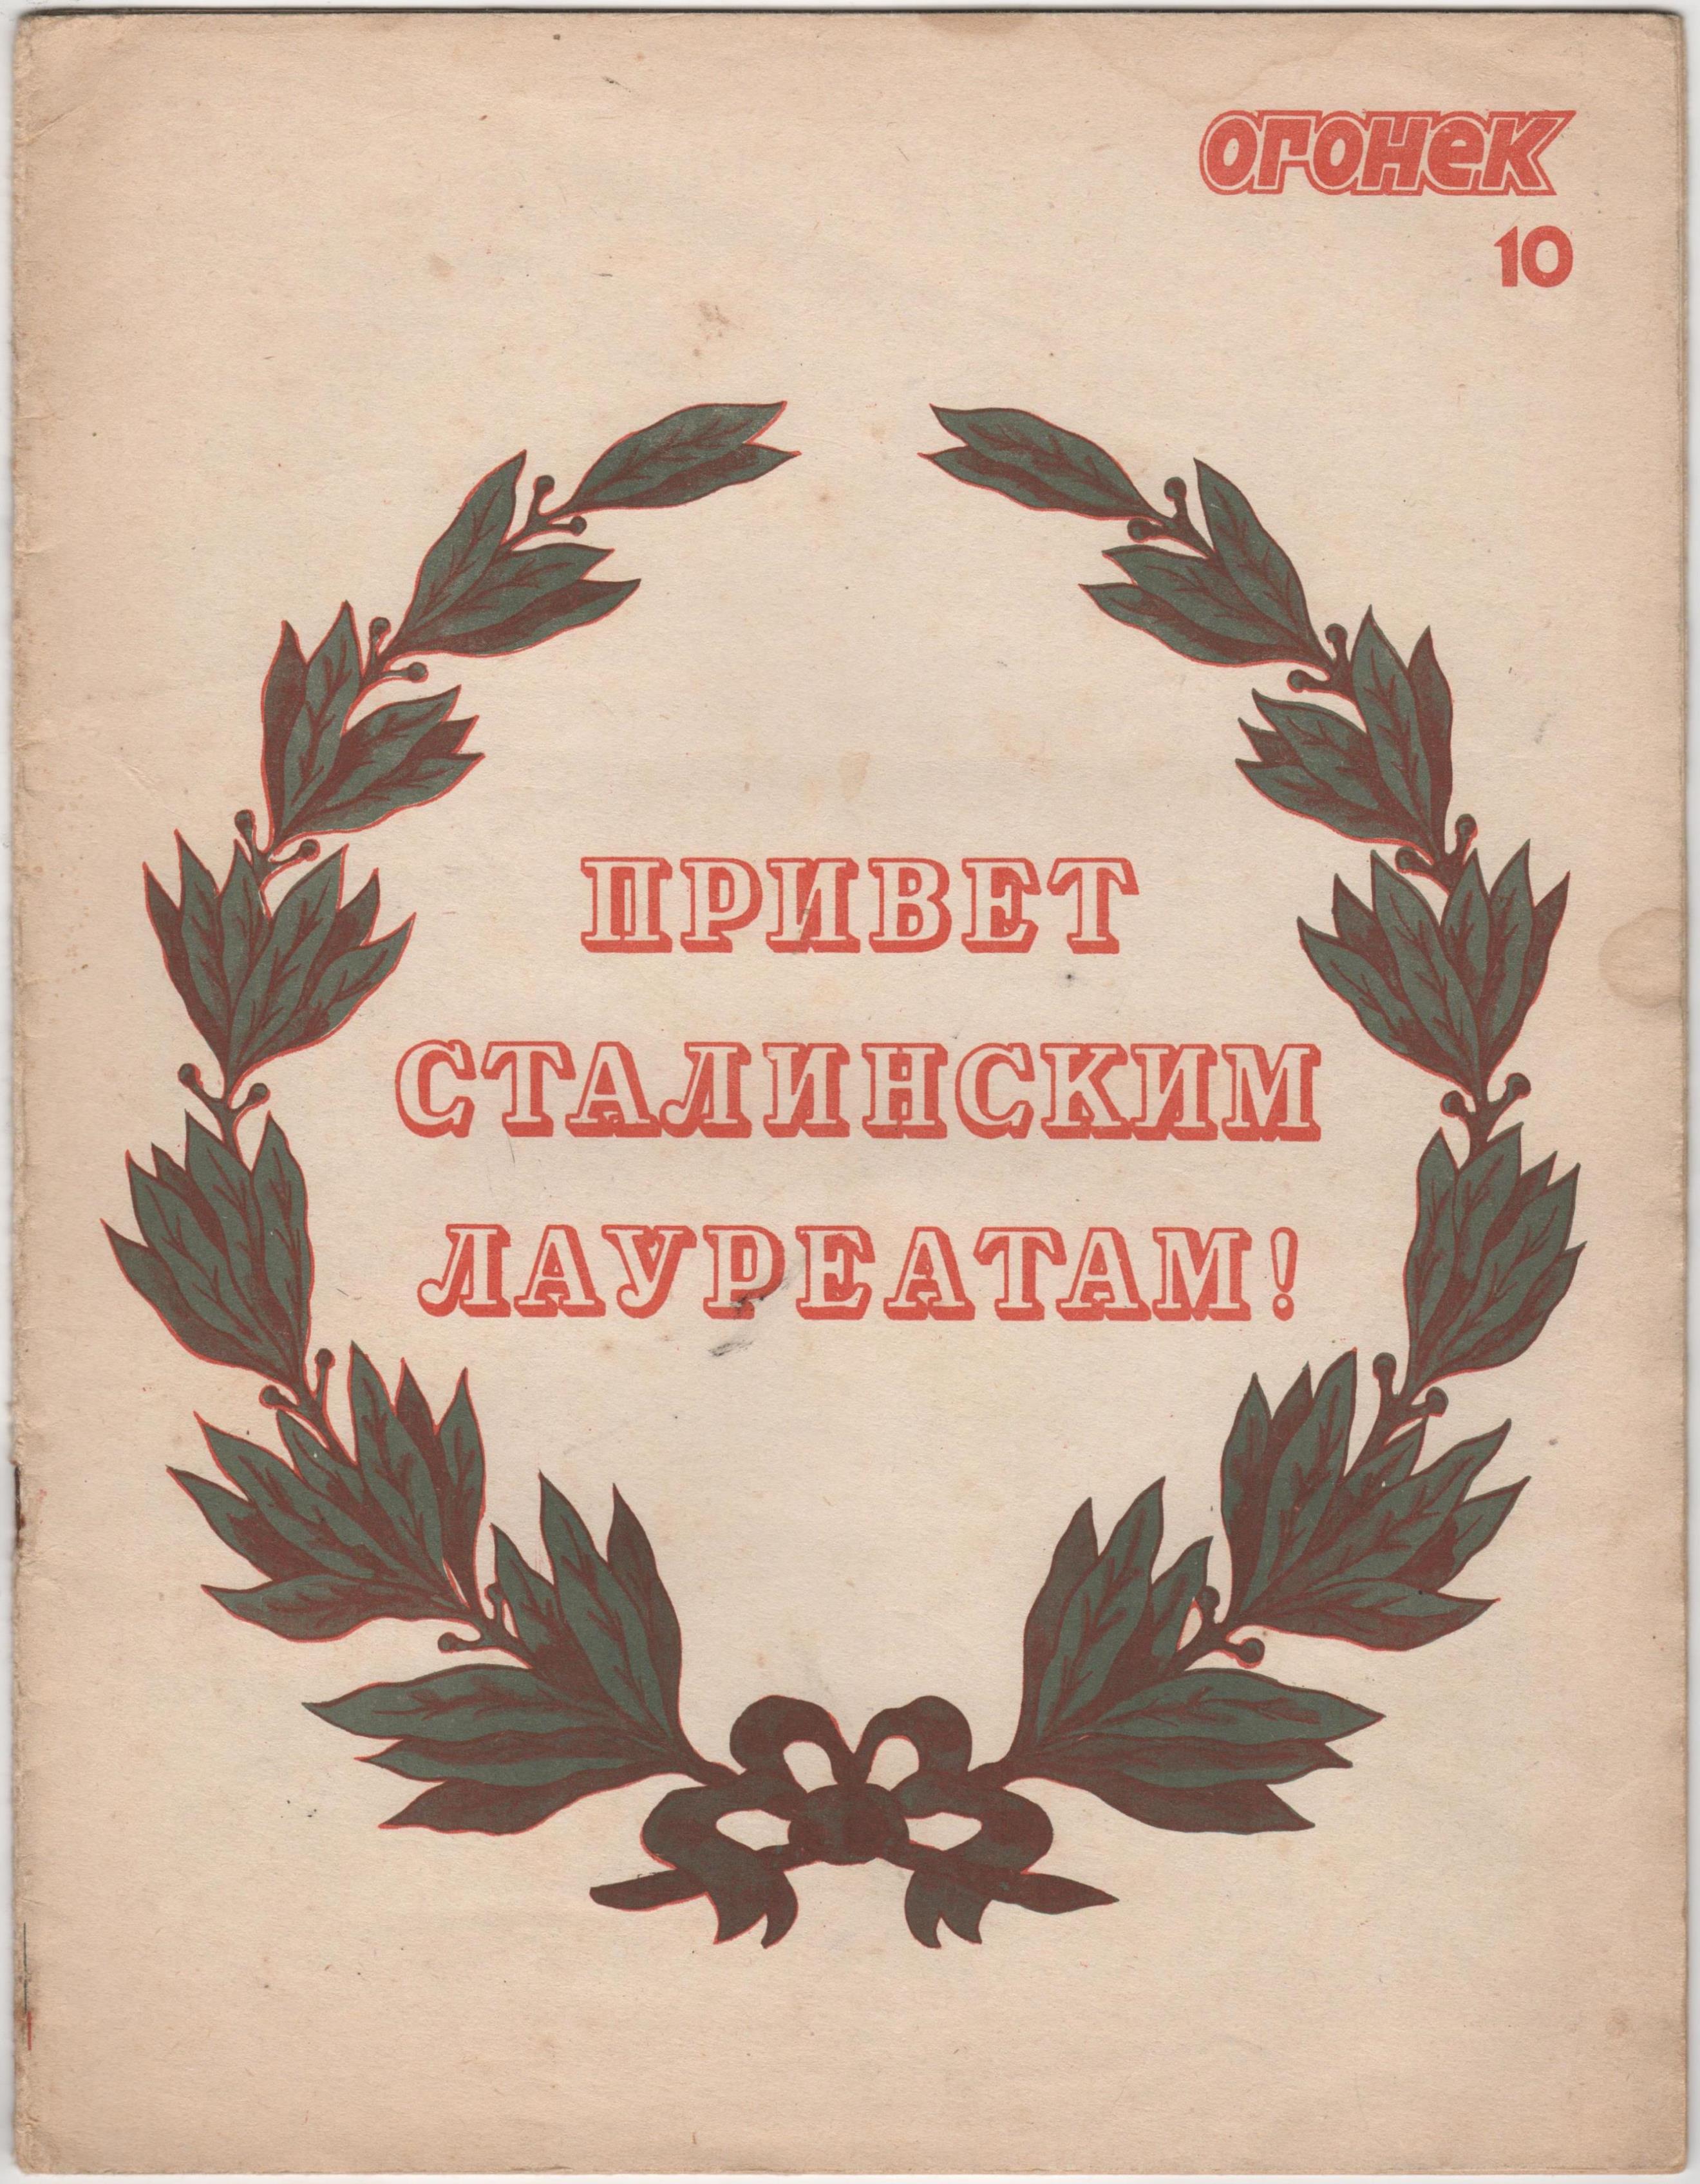 Журнал "Огонек". 1941. № 10 (квітень)